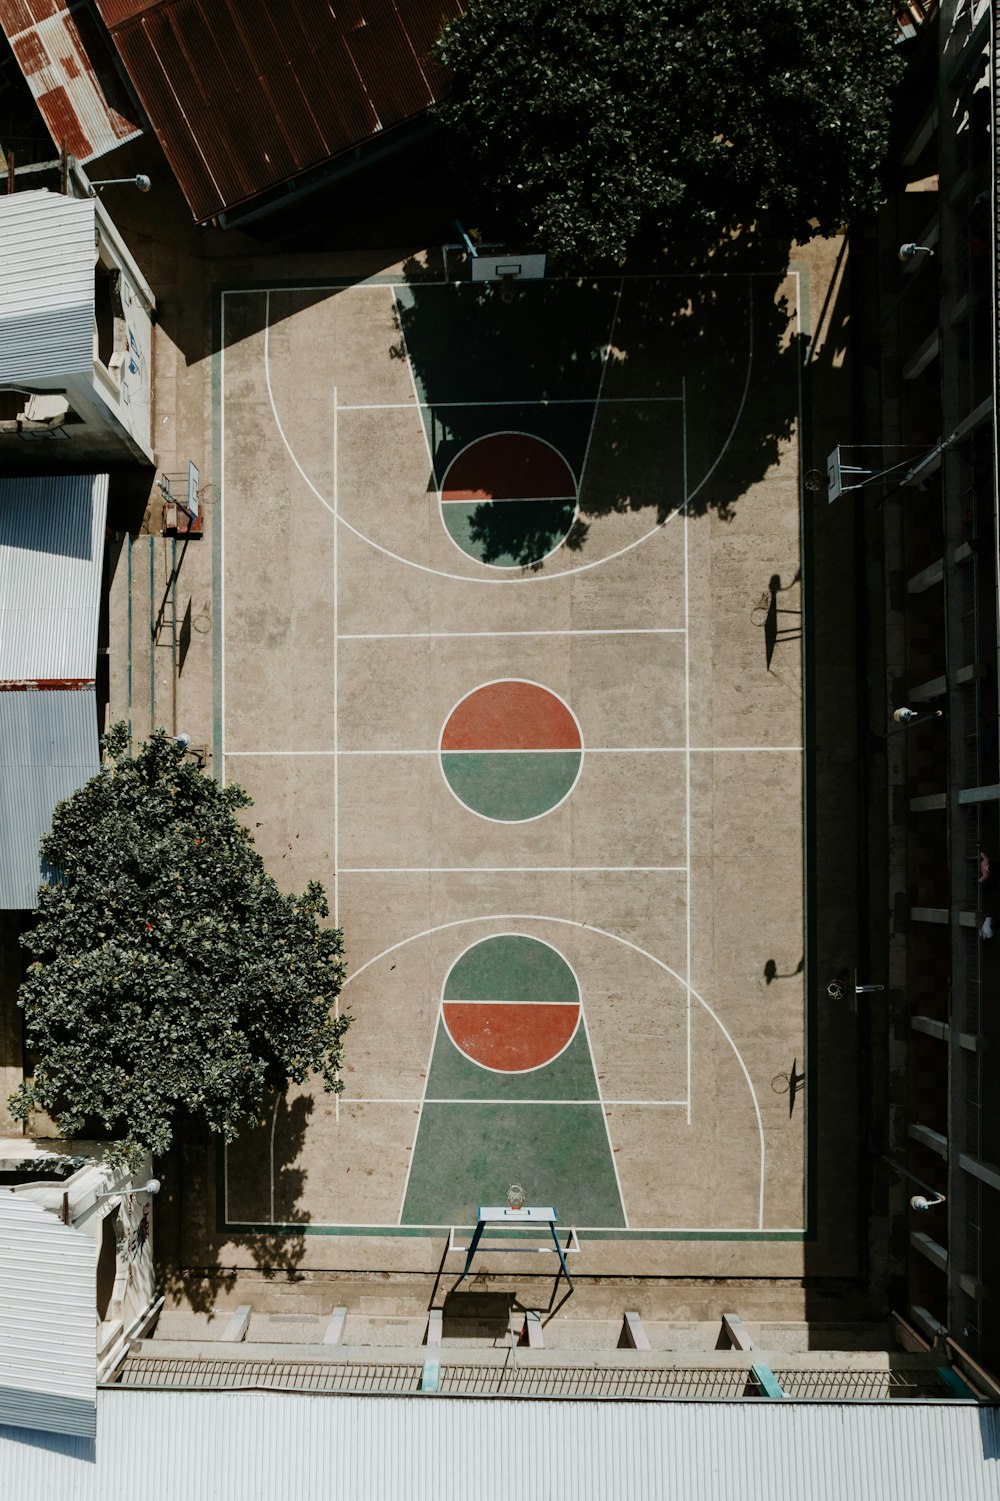 木のあるバスケットボールコートの俯瞰図